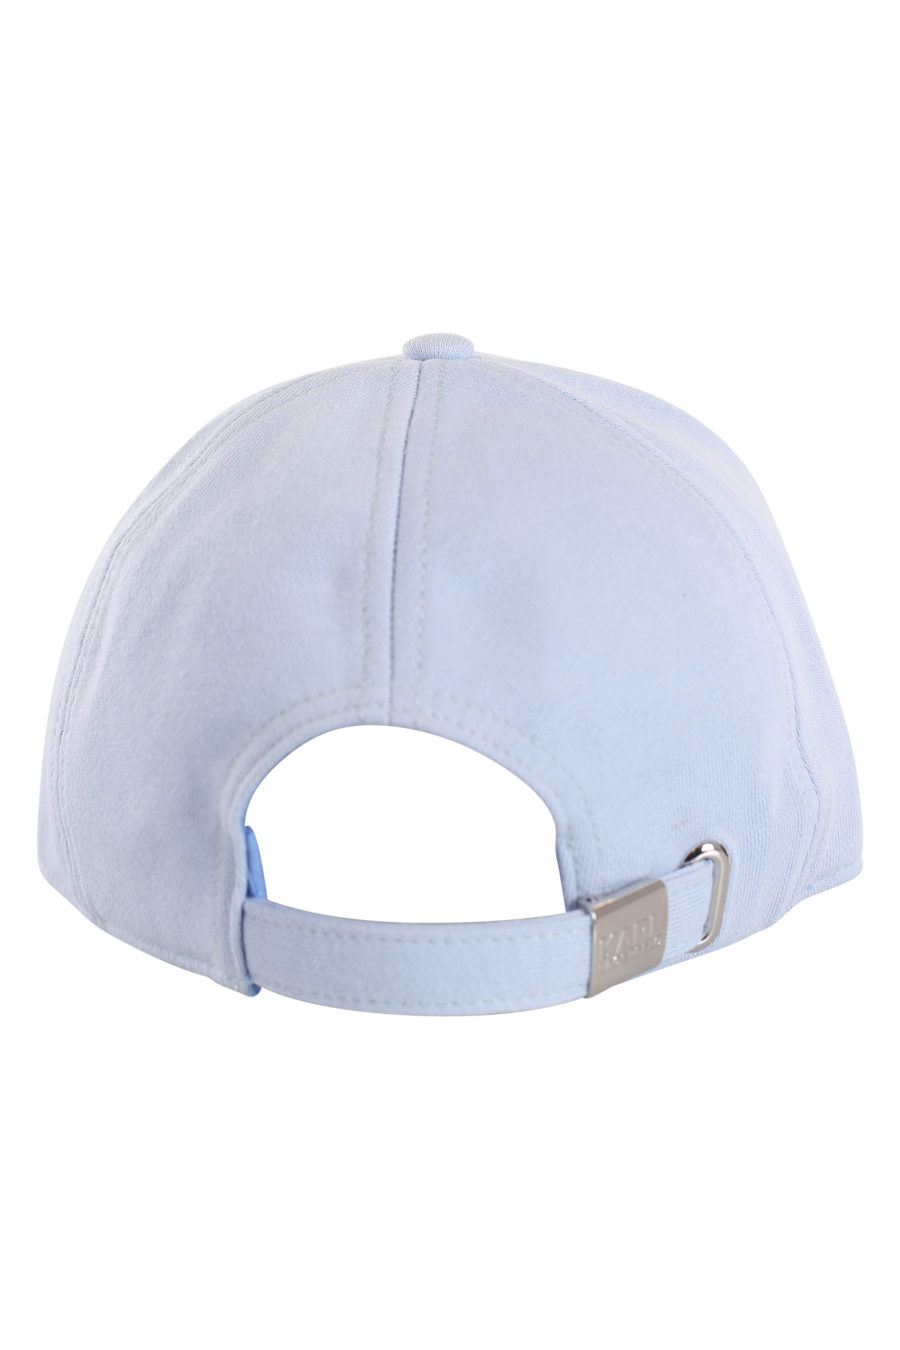 Gorra azul con logo bordado - IMG 0167